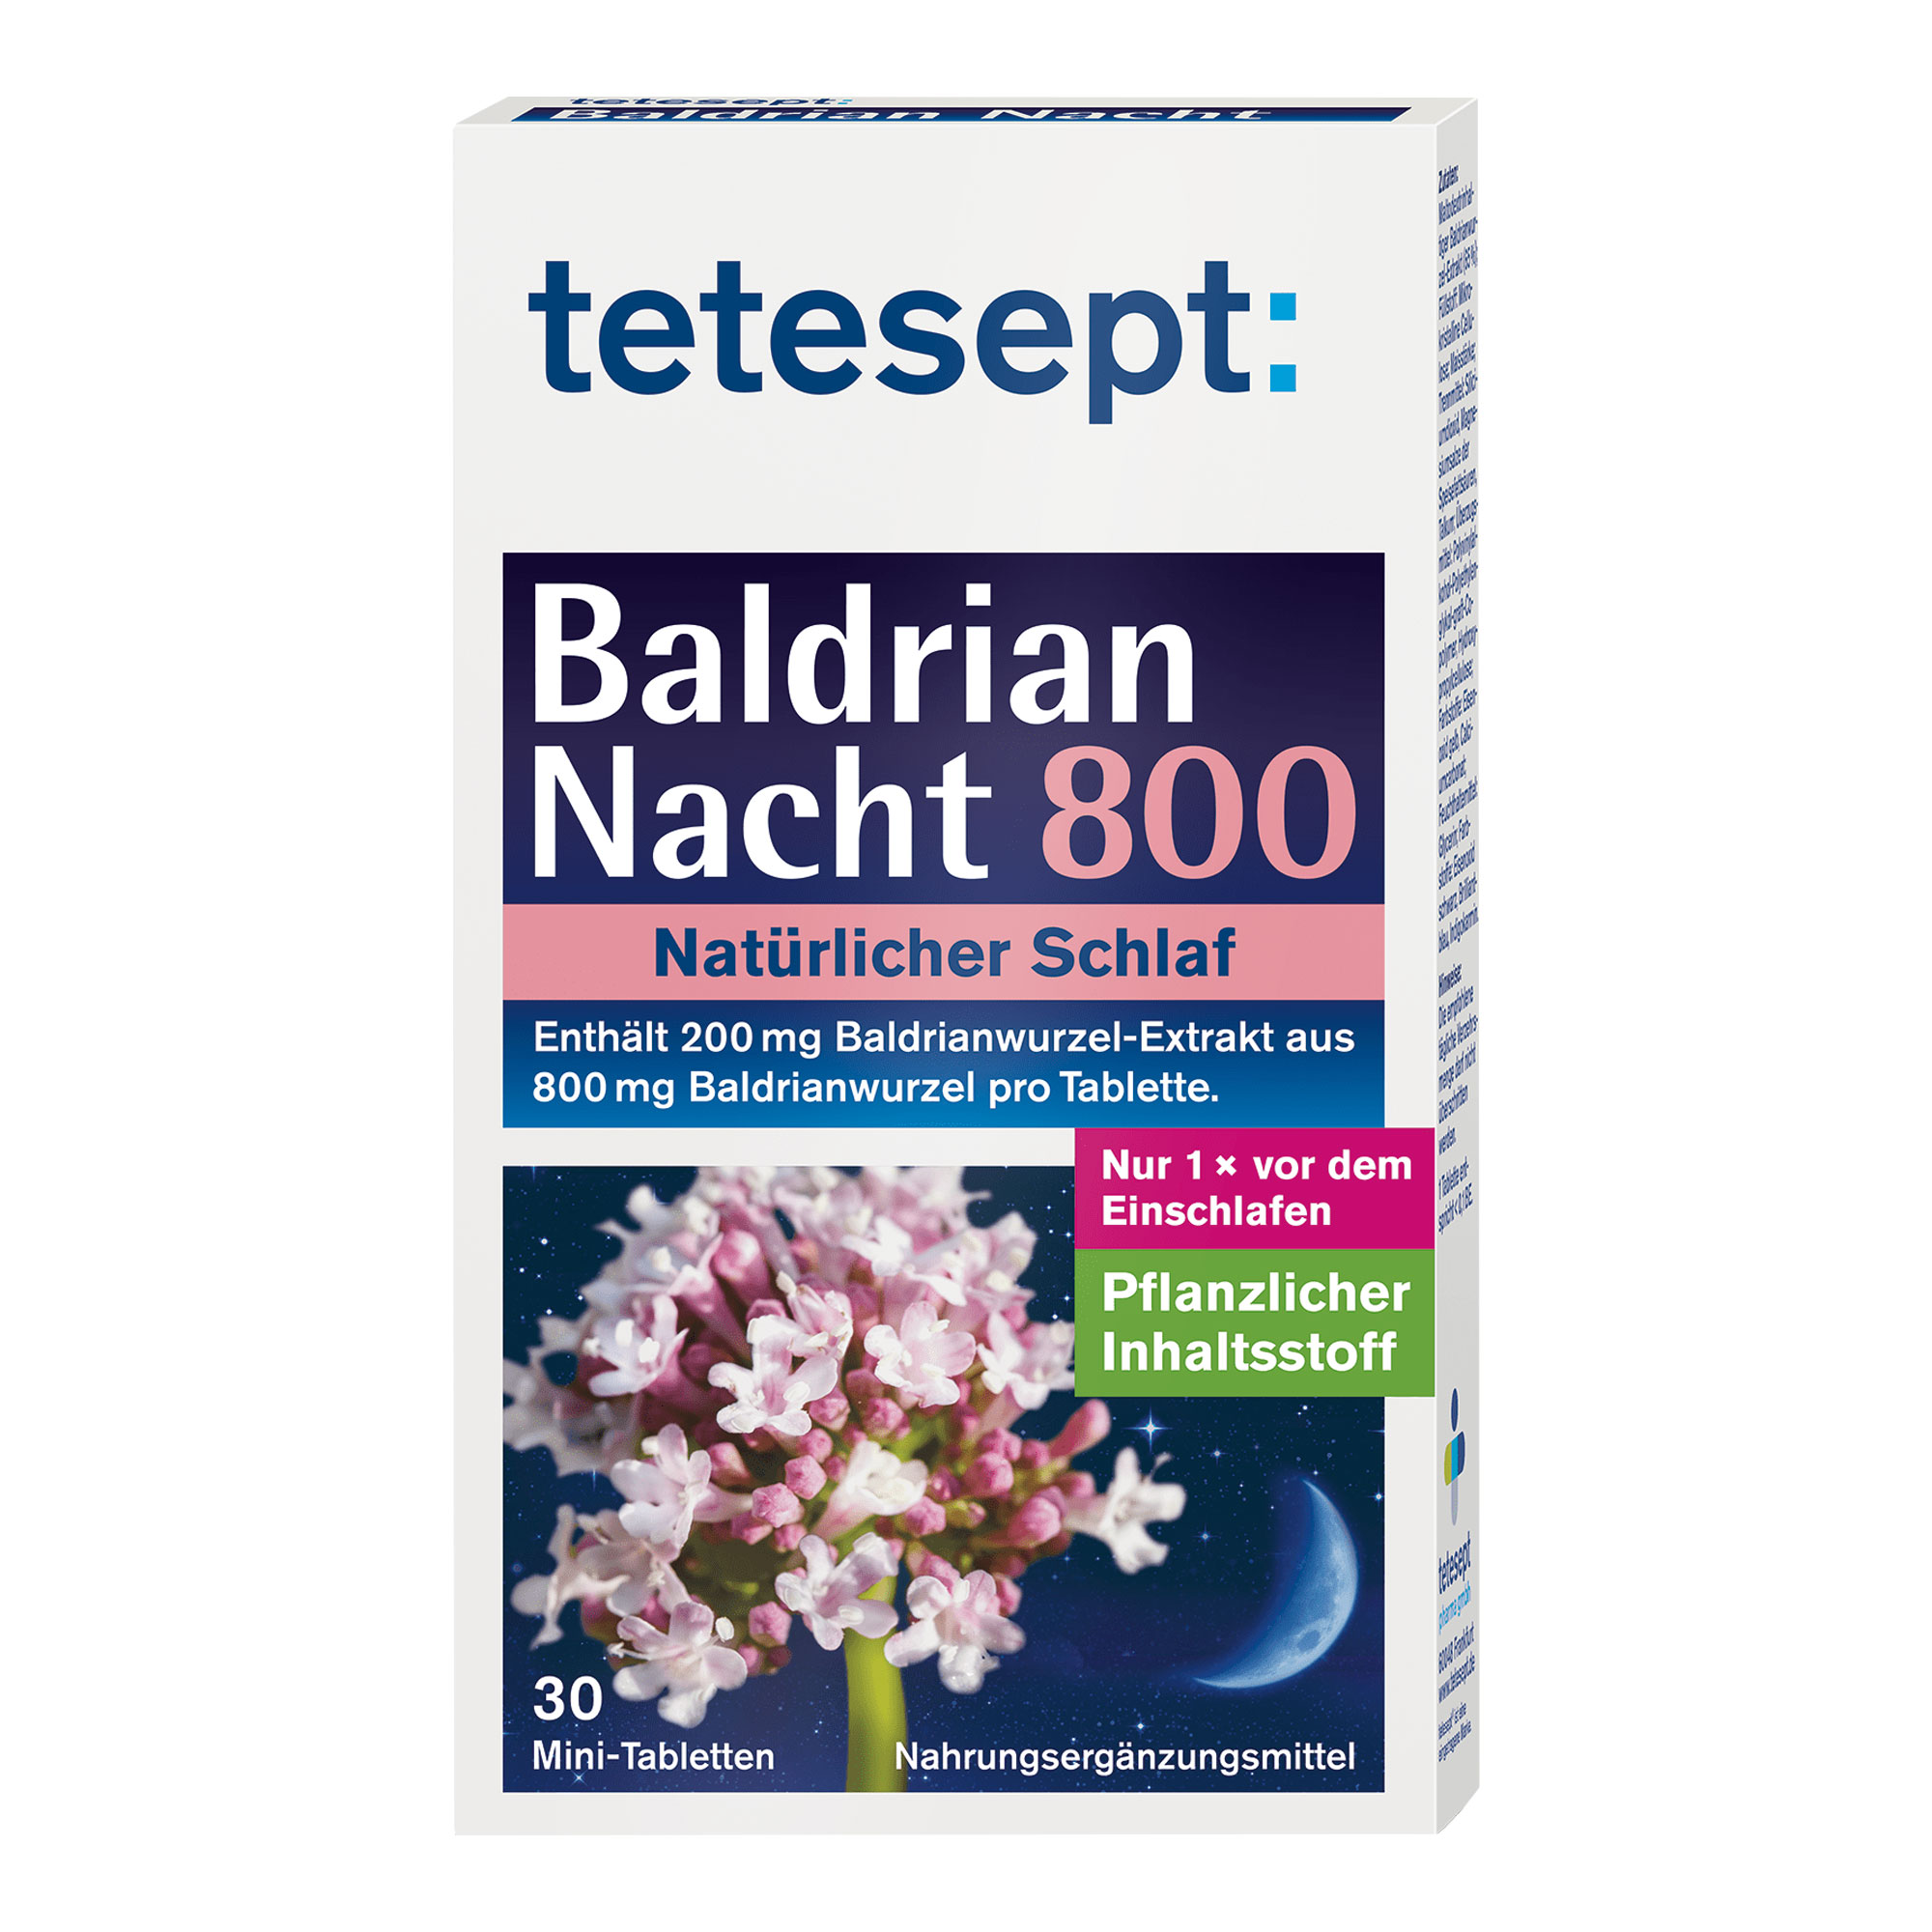 Nahrungsergänzungsmittel mit Baldrianwurzel-Extrakt in praktischer Mini-Tablette.